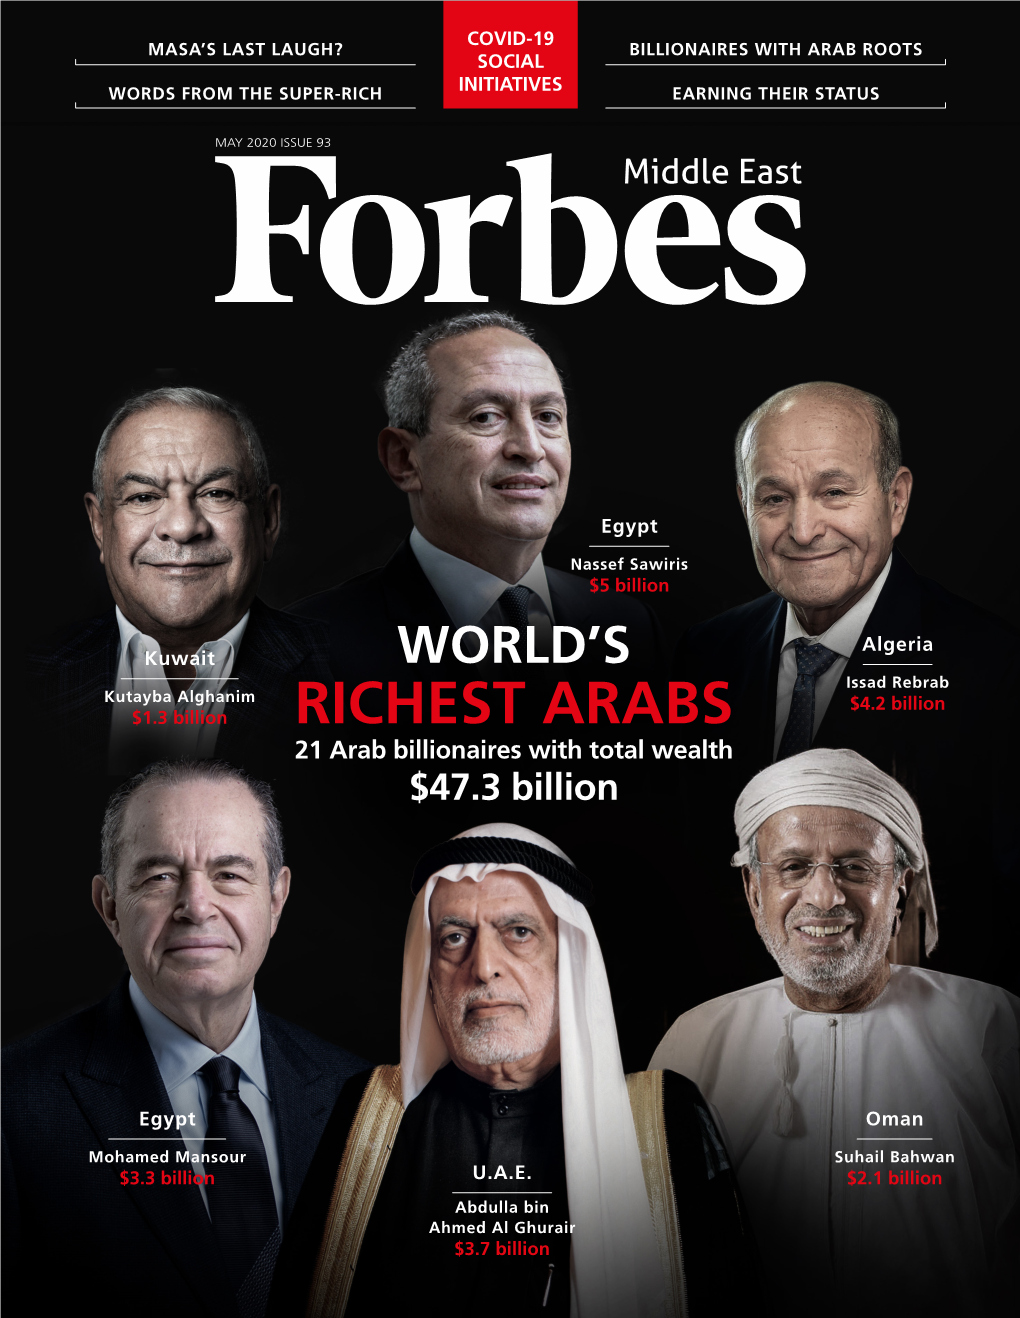 RICHEST ARABS 21 Arab Billionaires with Total Wealth $47.3 Billion